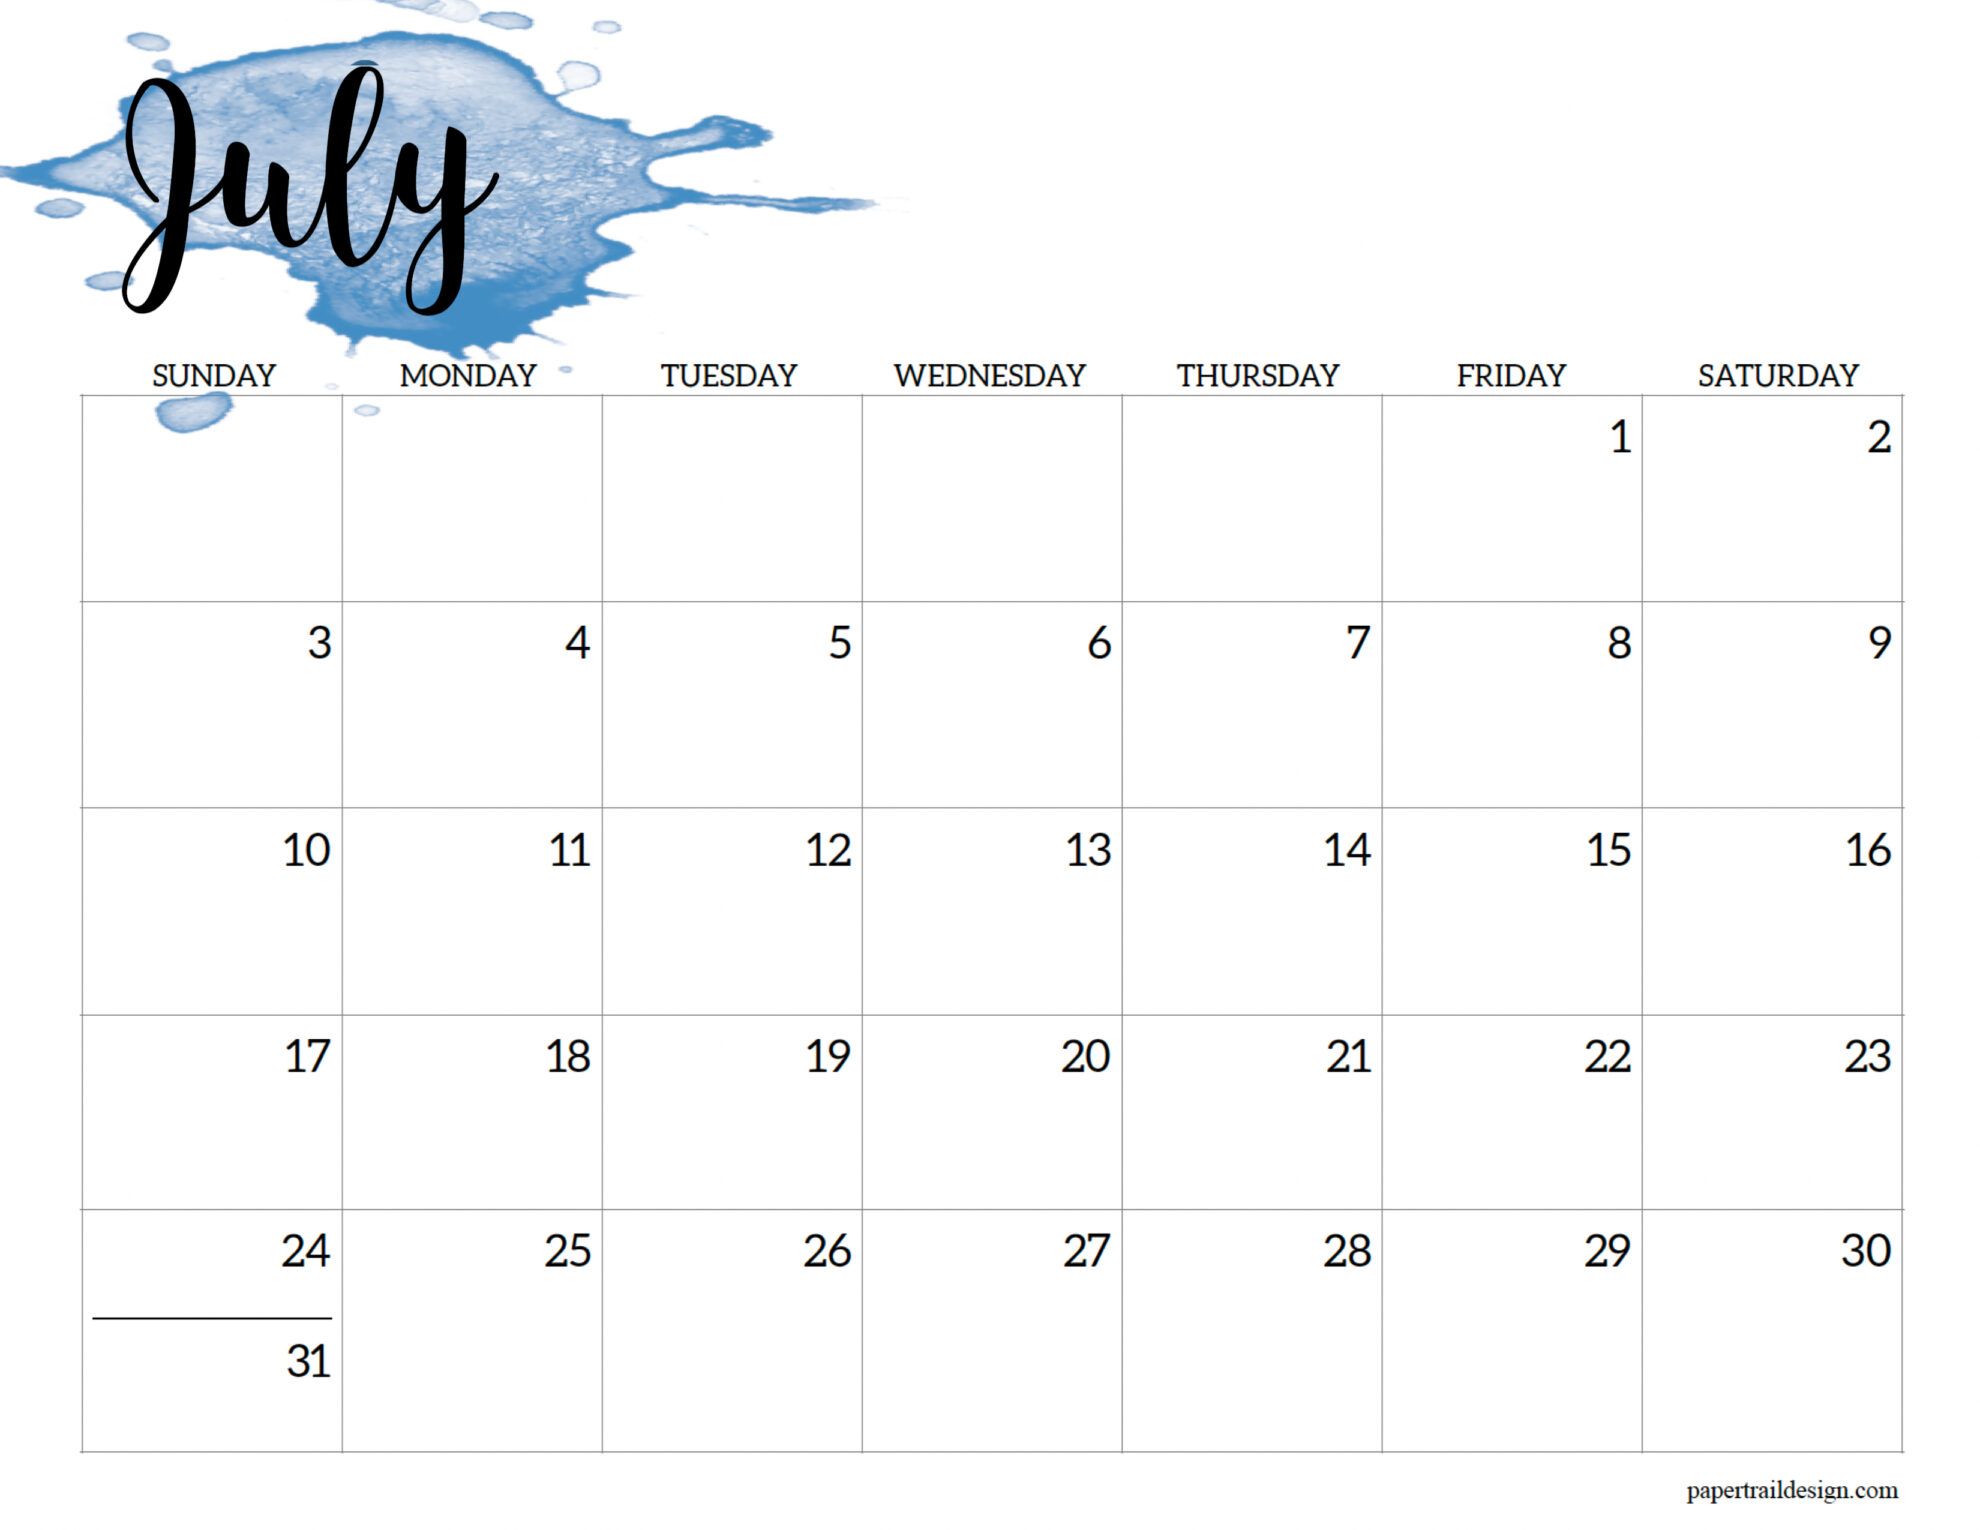 June 2022 Printable Calendar 2022 Calendar Printable - Watercolor - Paper Trail Design